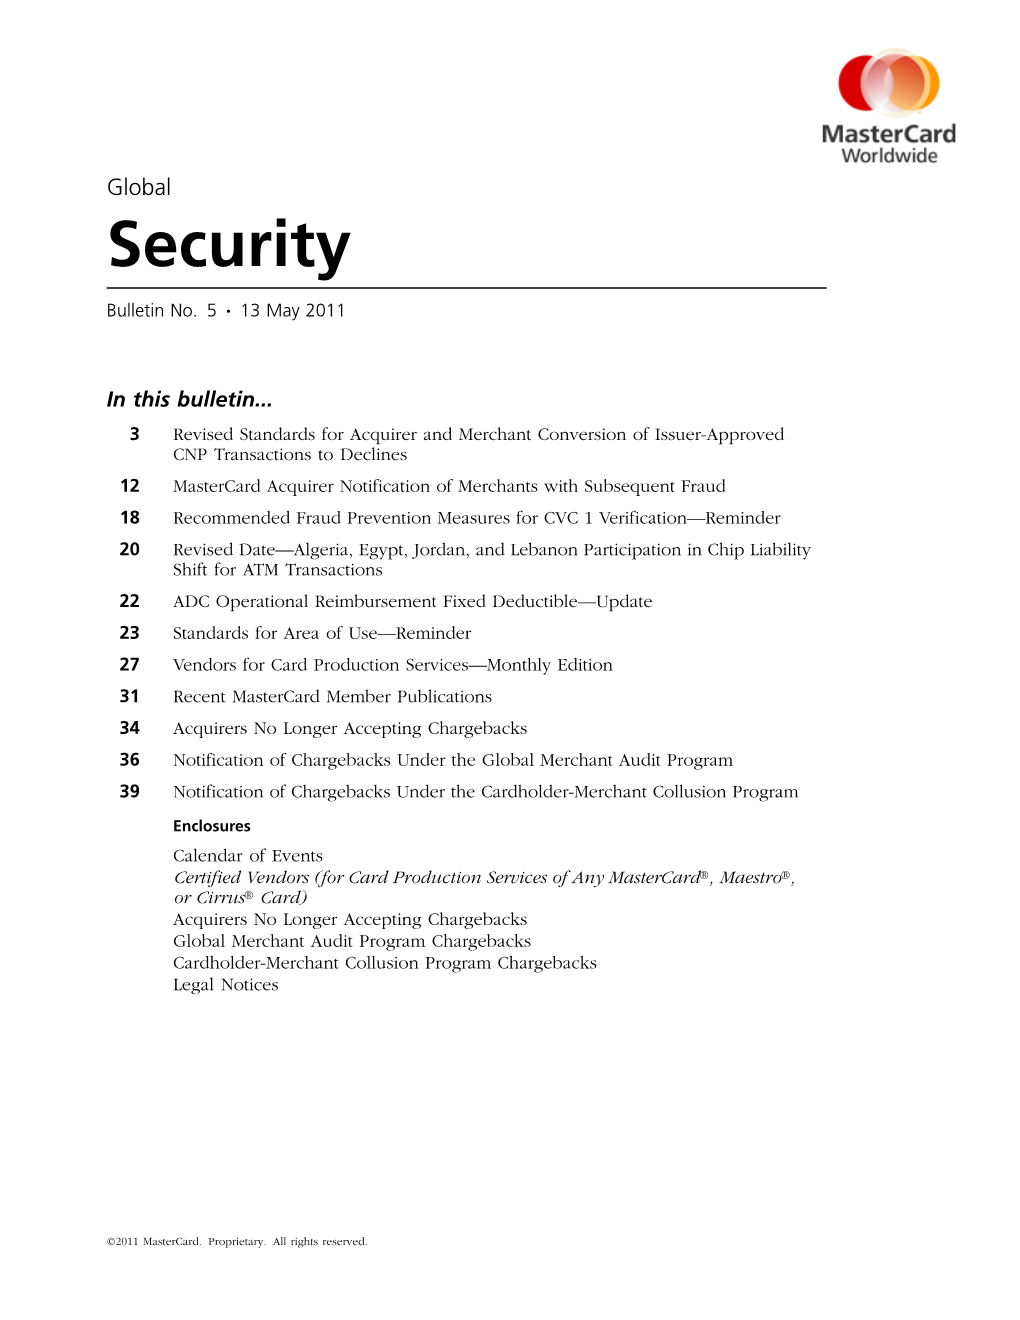 Global Security Bulletin No. 5, 13 May 2011 ©2011 Mastercard